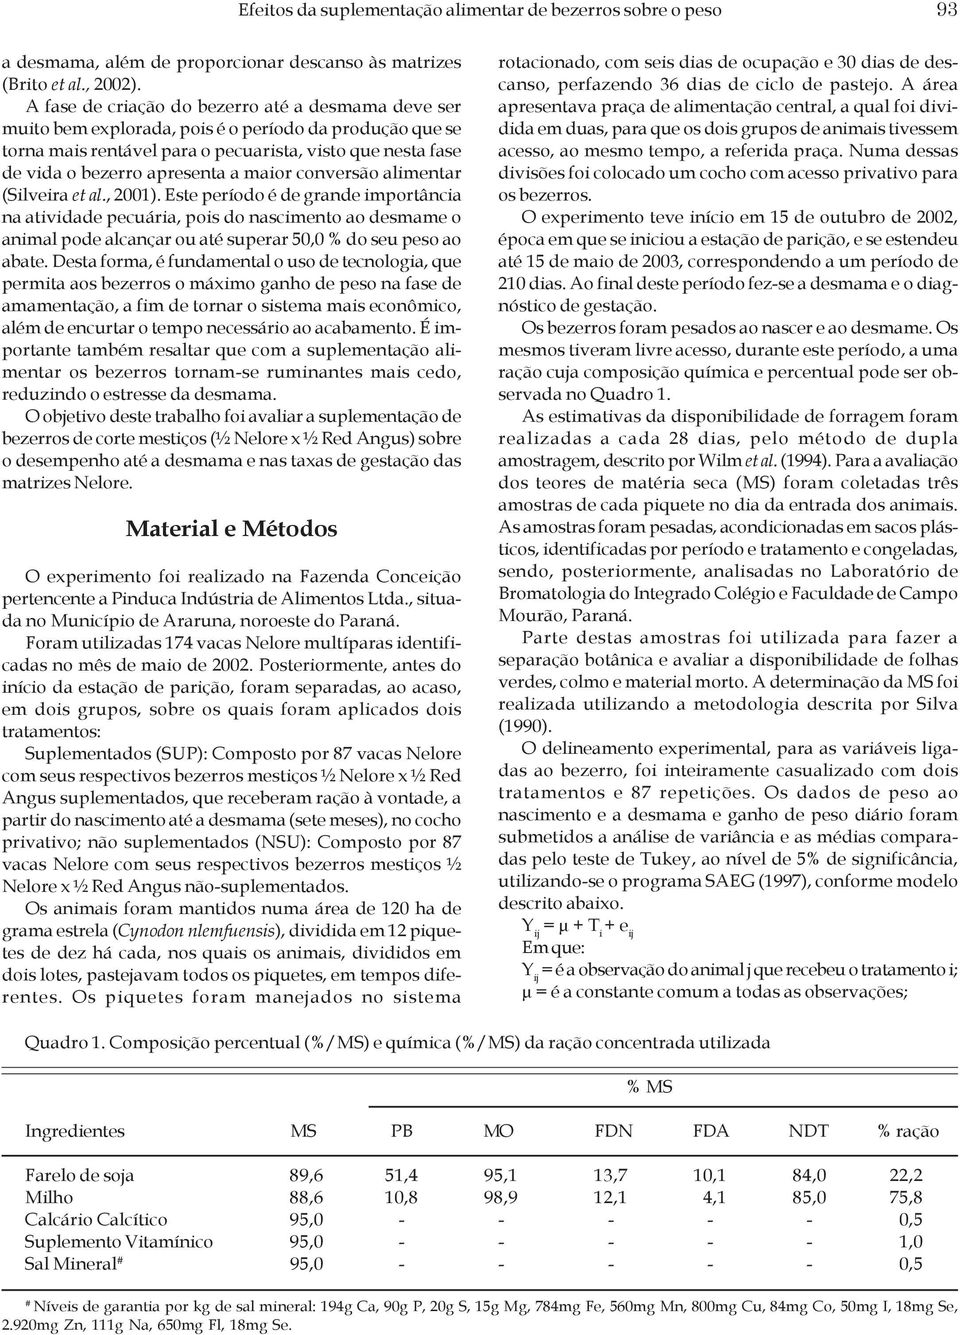 maior conversão alimentar (Silveira et al., 2001).